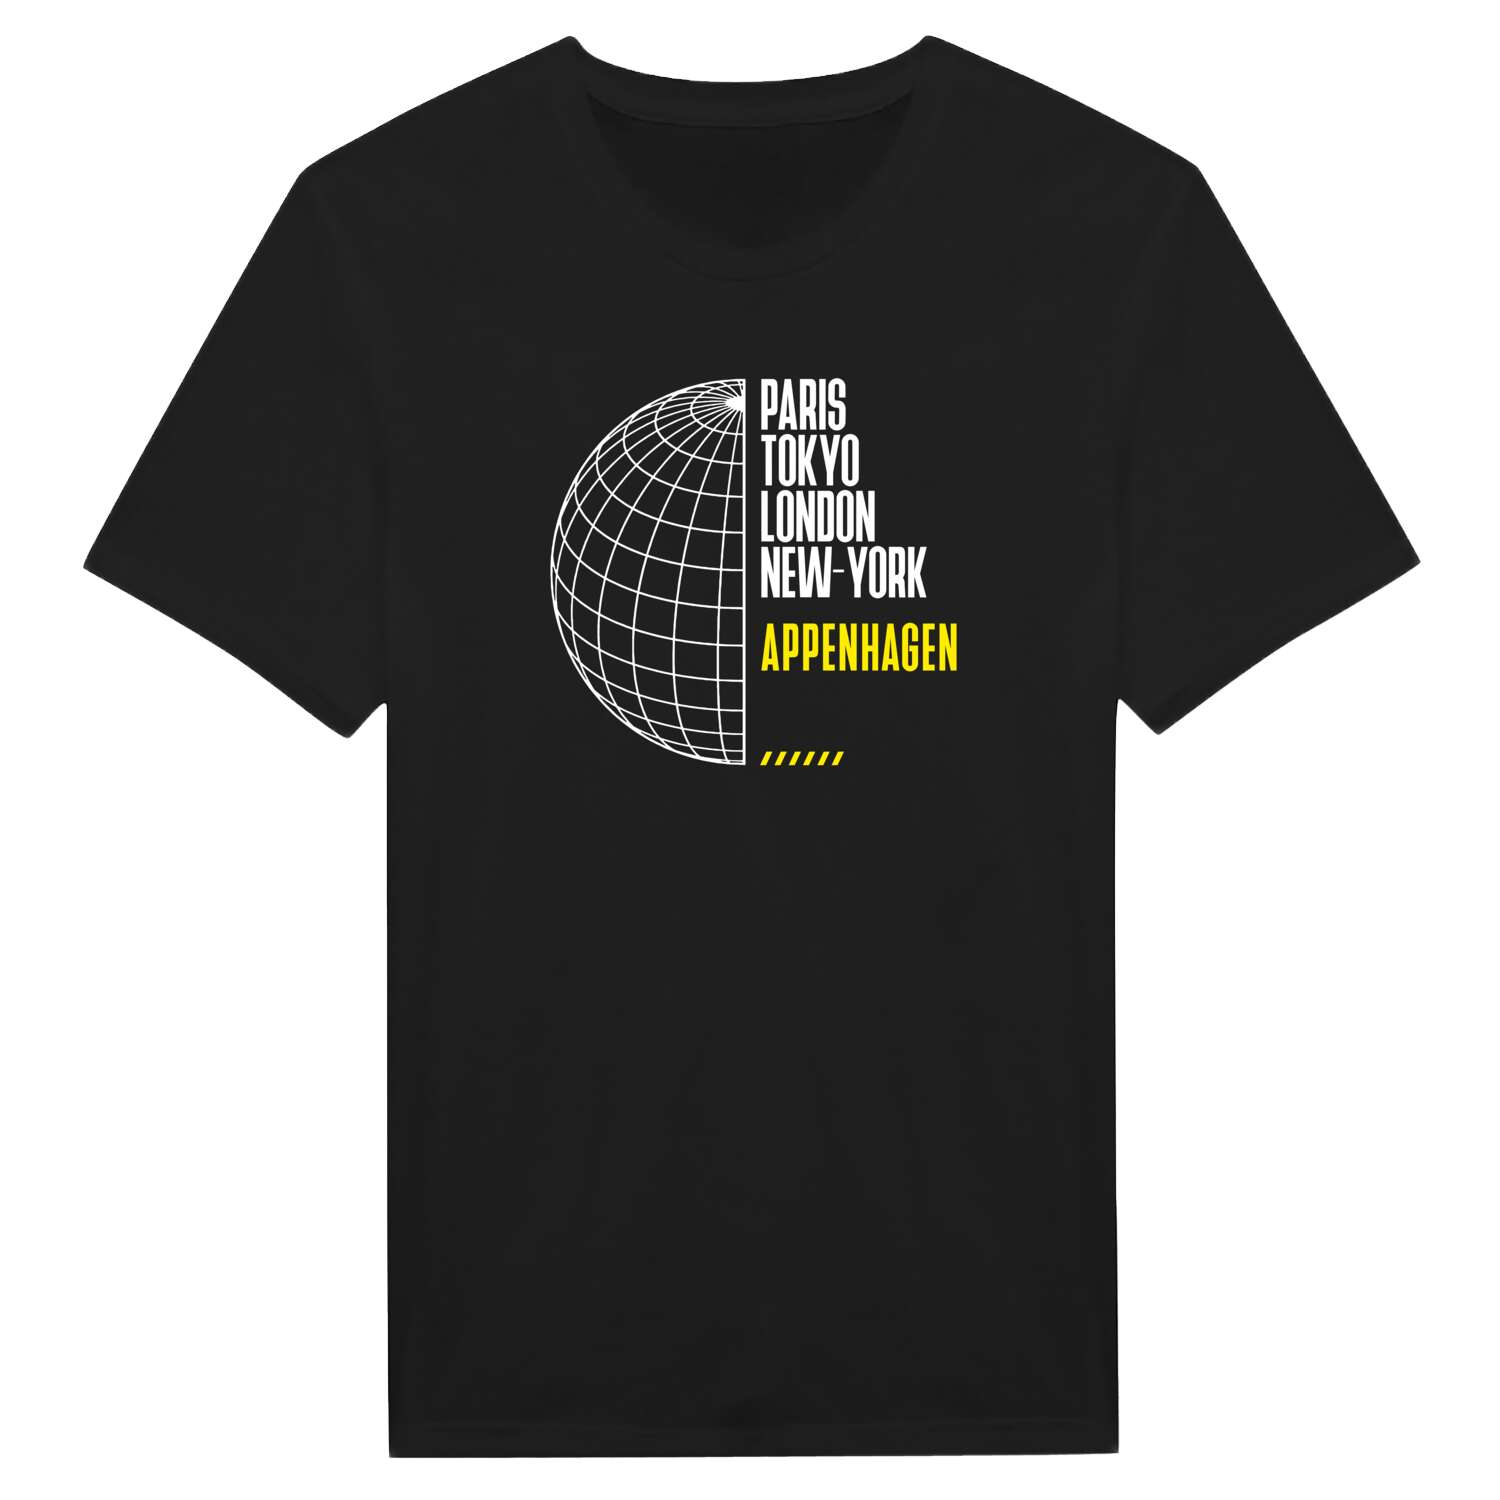 Appenhagen T-Shirt »Paris Tokyo London«